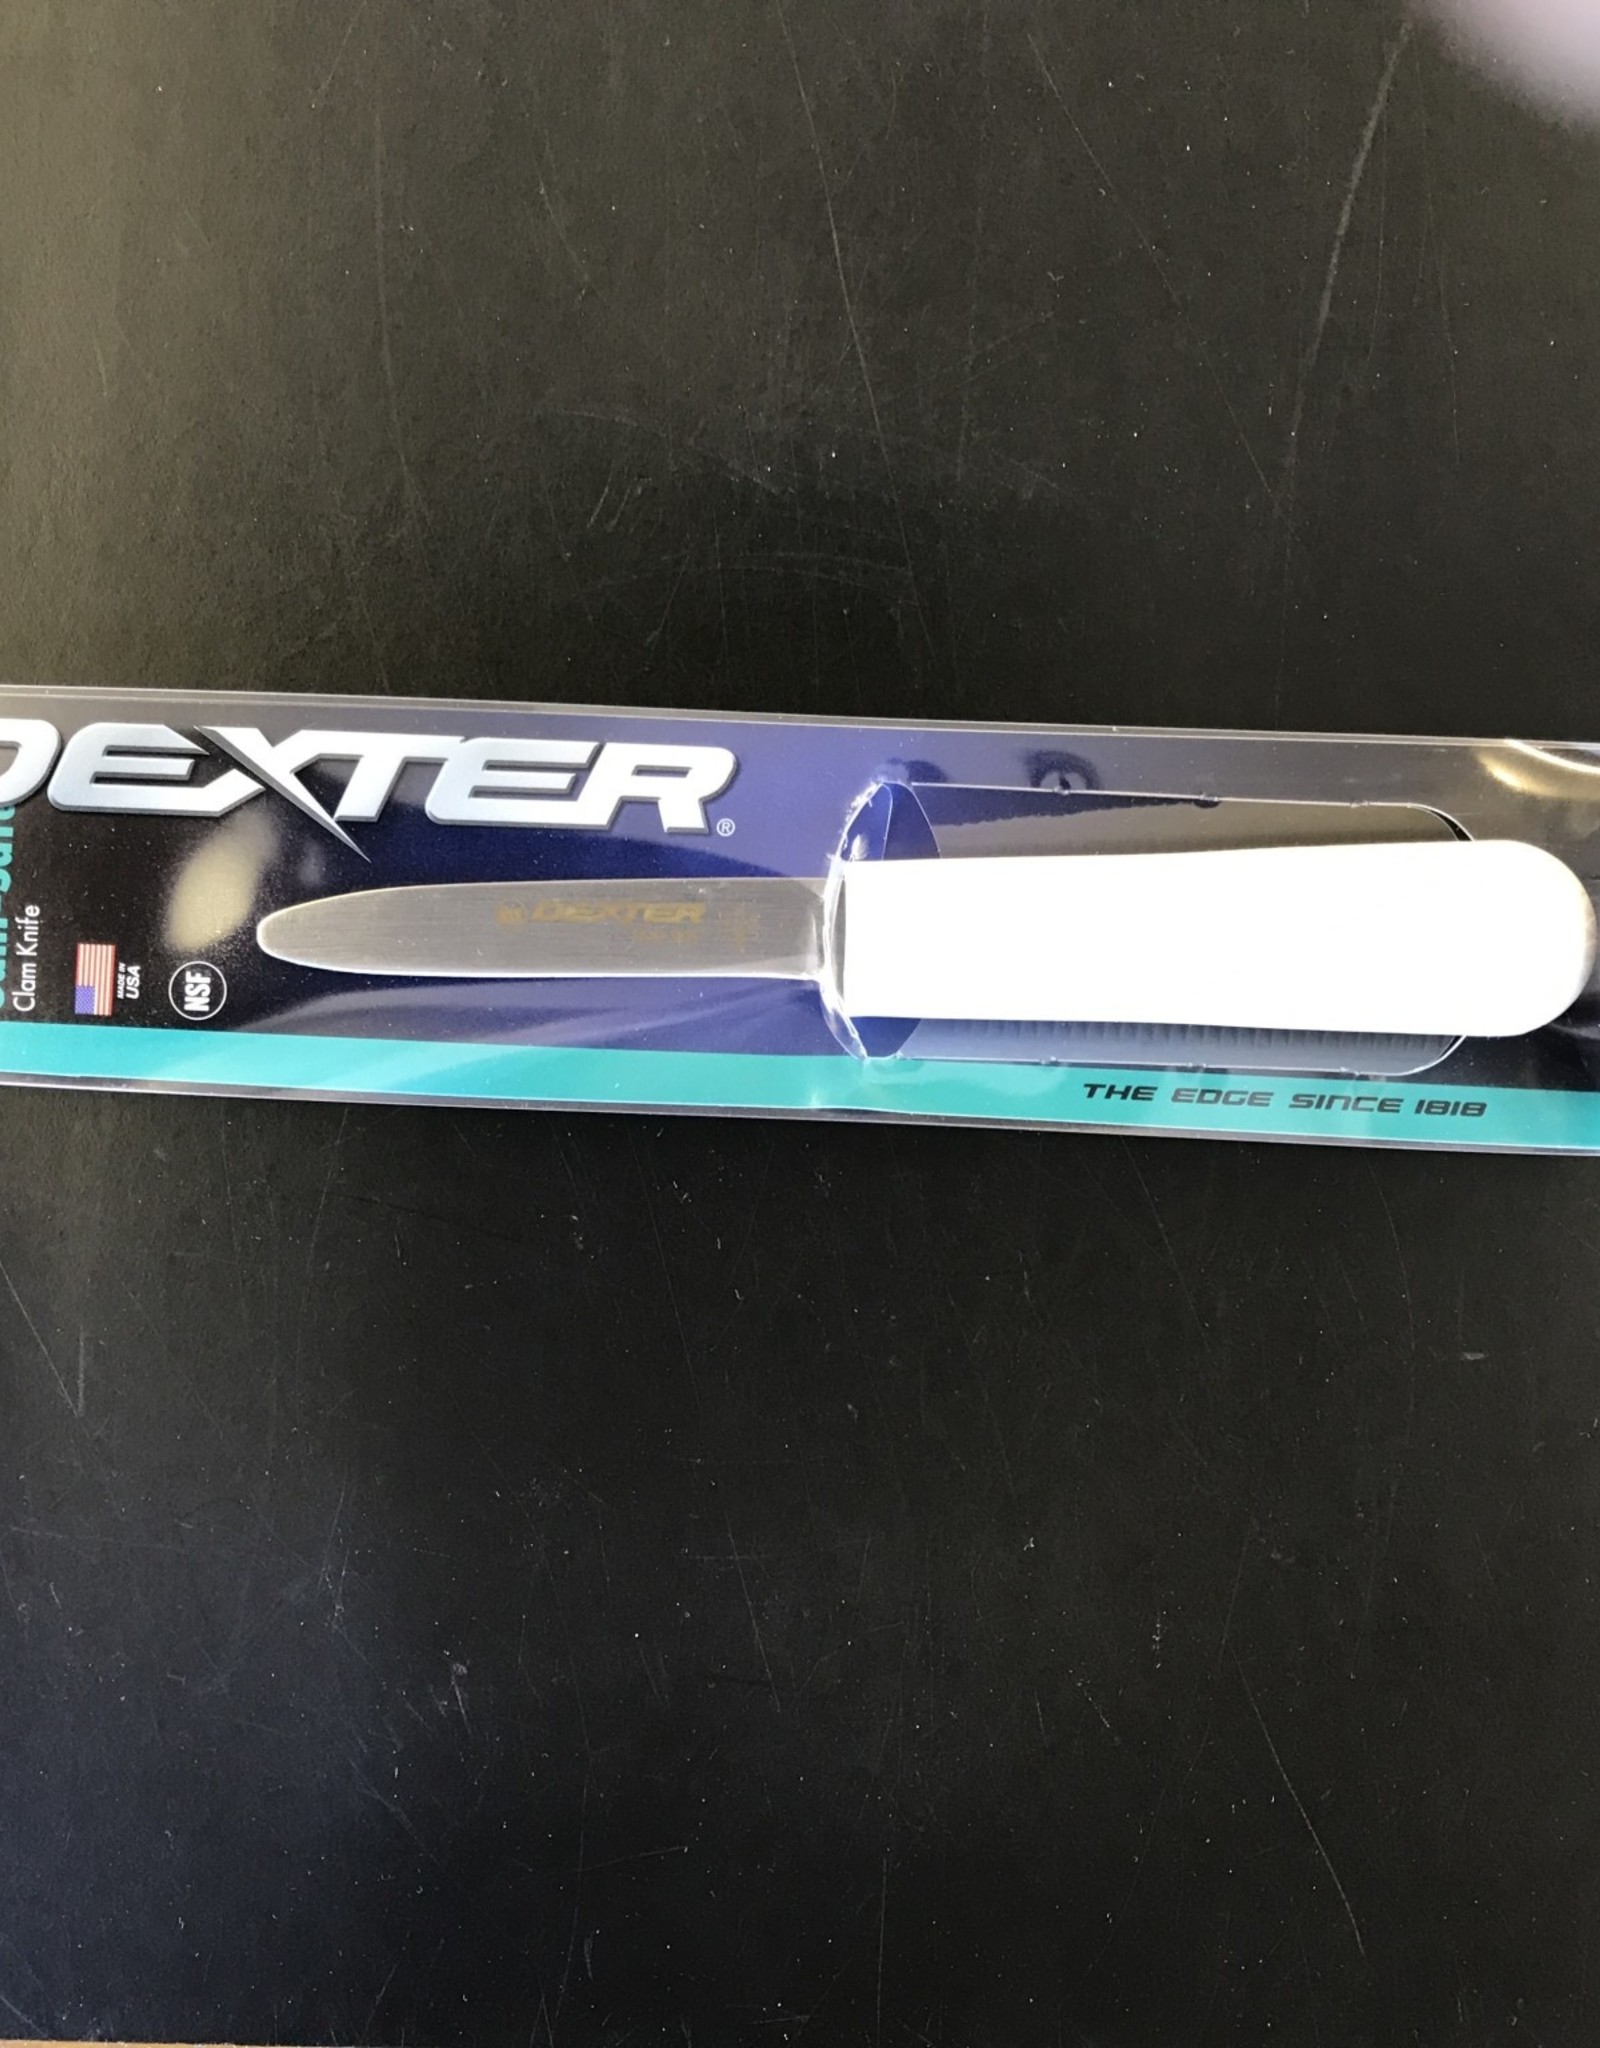 Dexter Dexter S127PCP Sani-Safe 3" Clam Knife, White Sure Grip Handle